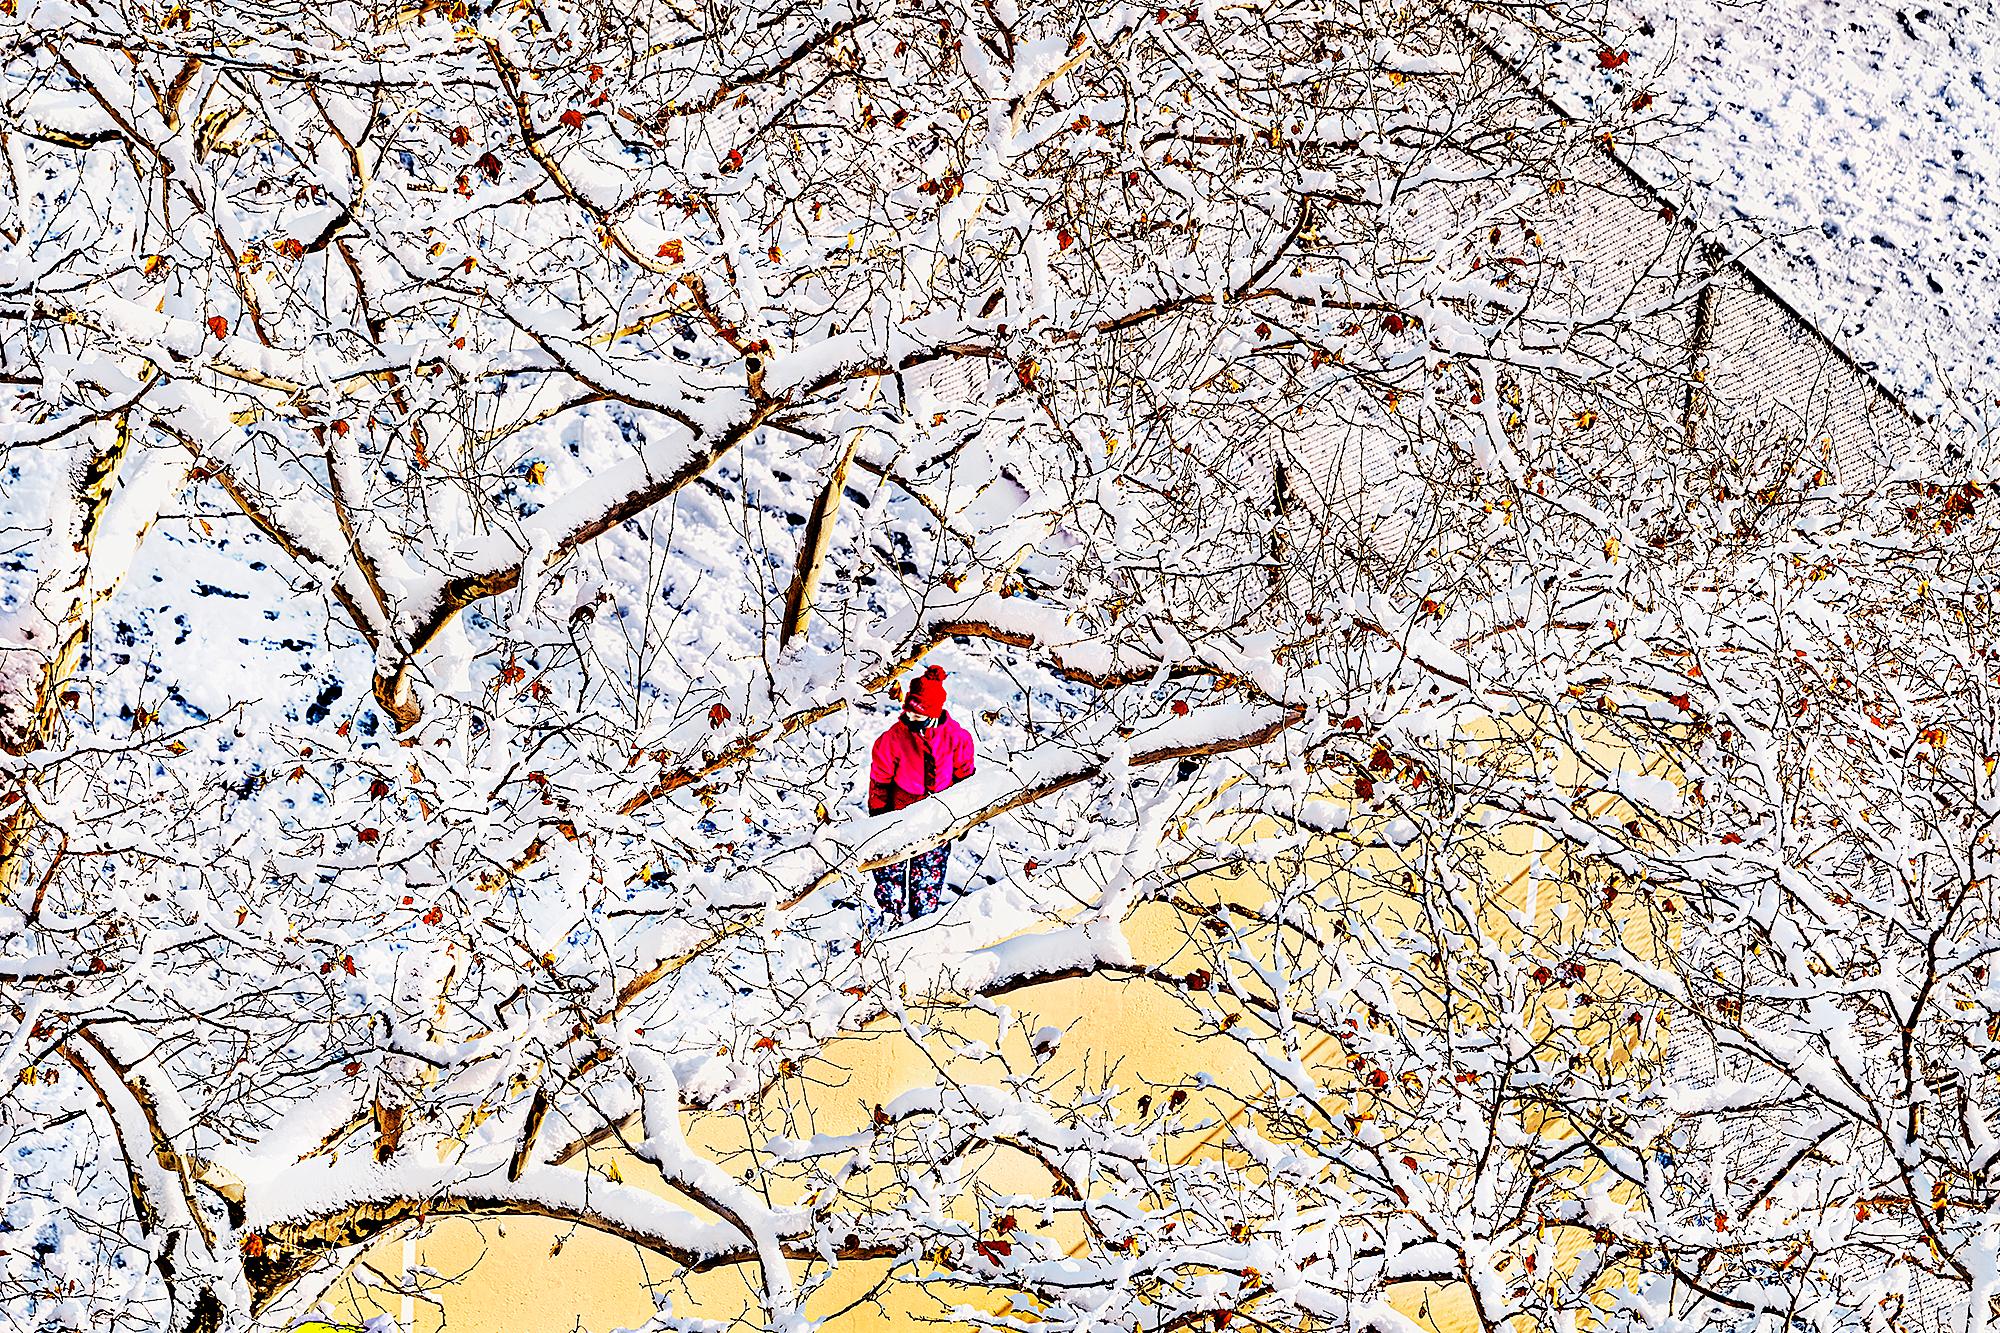 Mitchell Funk Landscape Photograph – Eine abstrakte Winterszene mit einer einzelnen Figur in einem roten Mantel